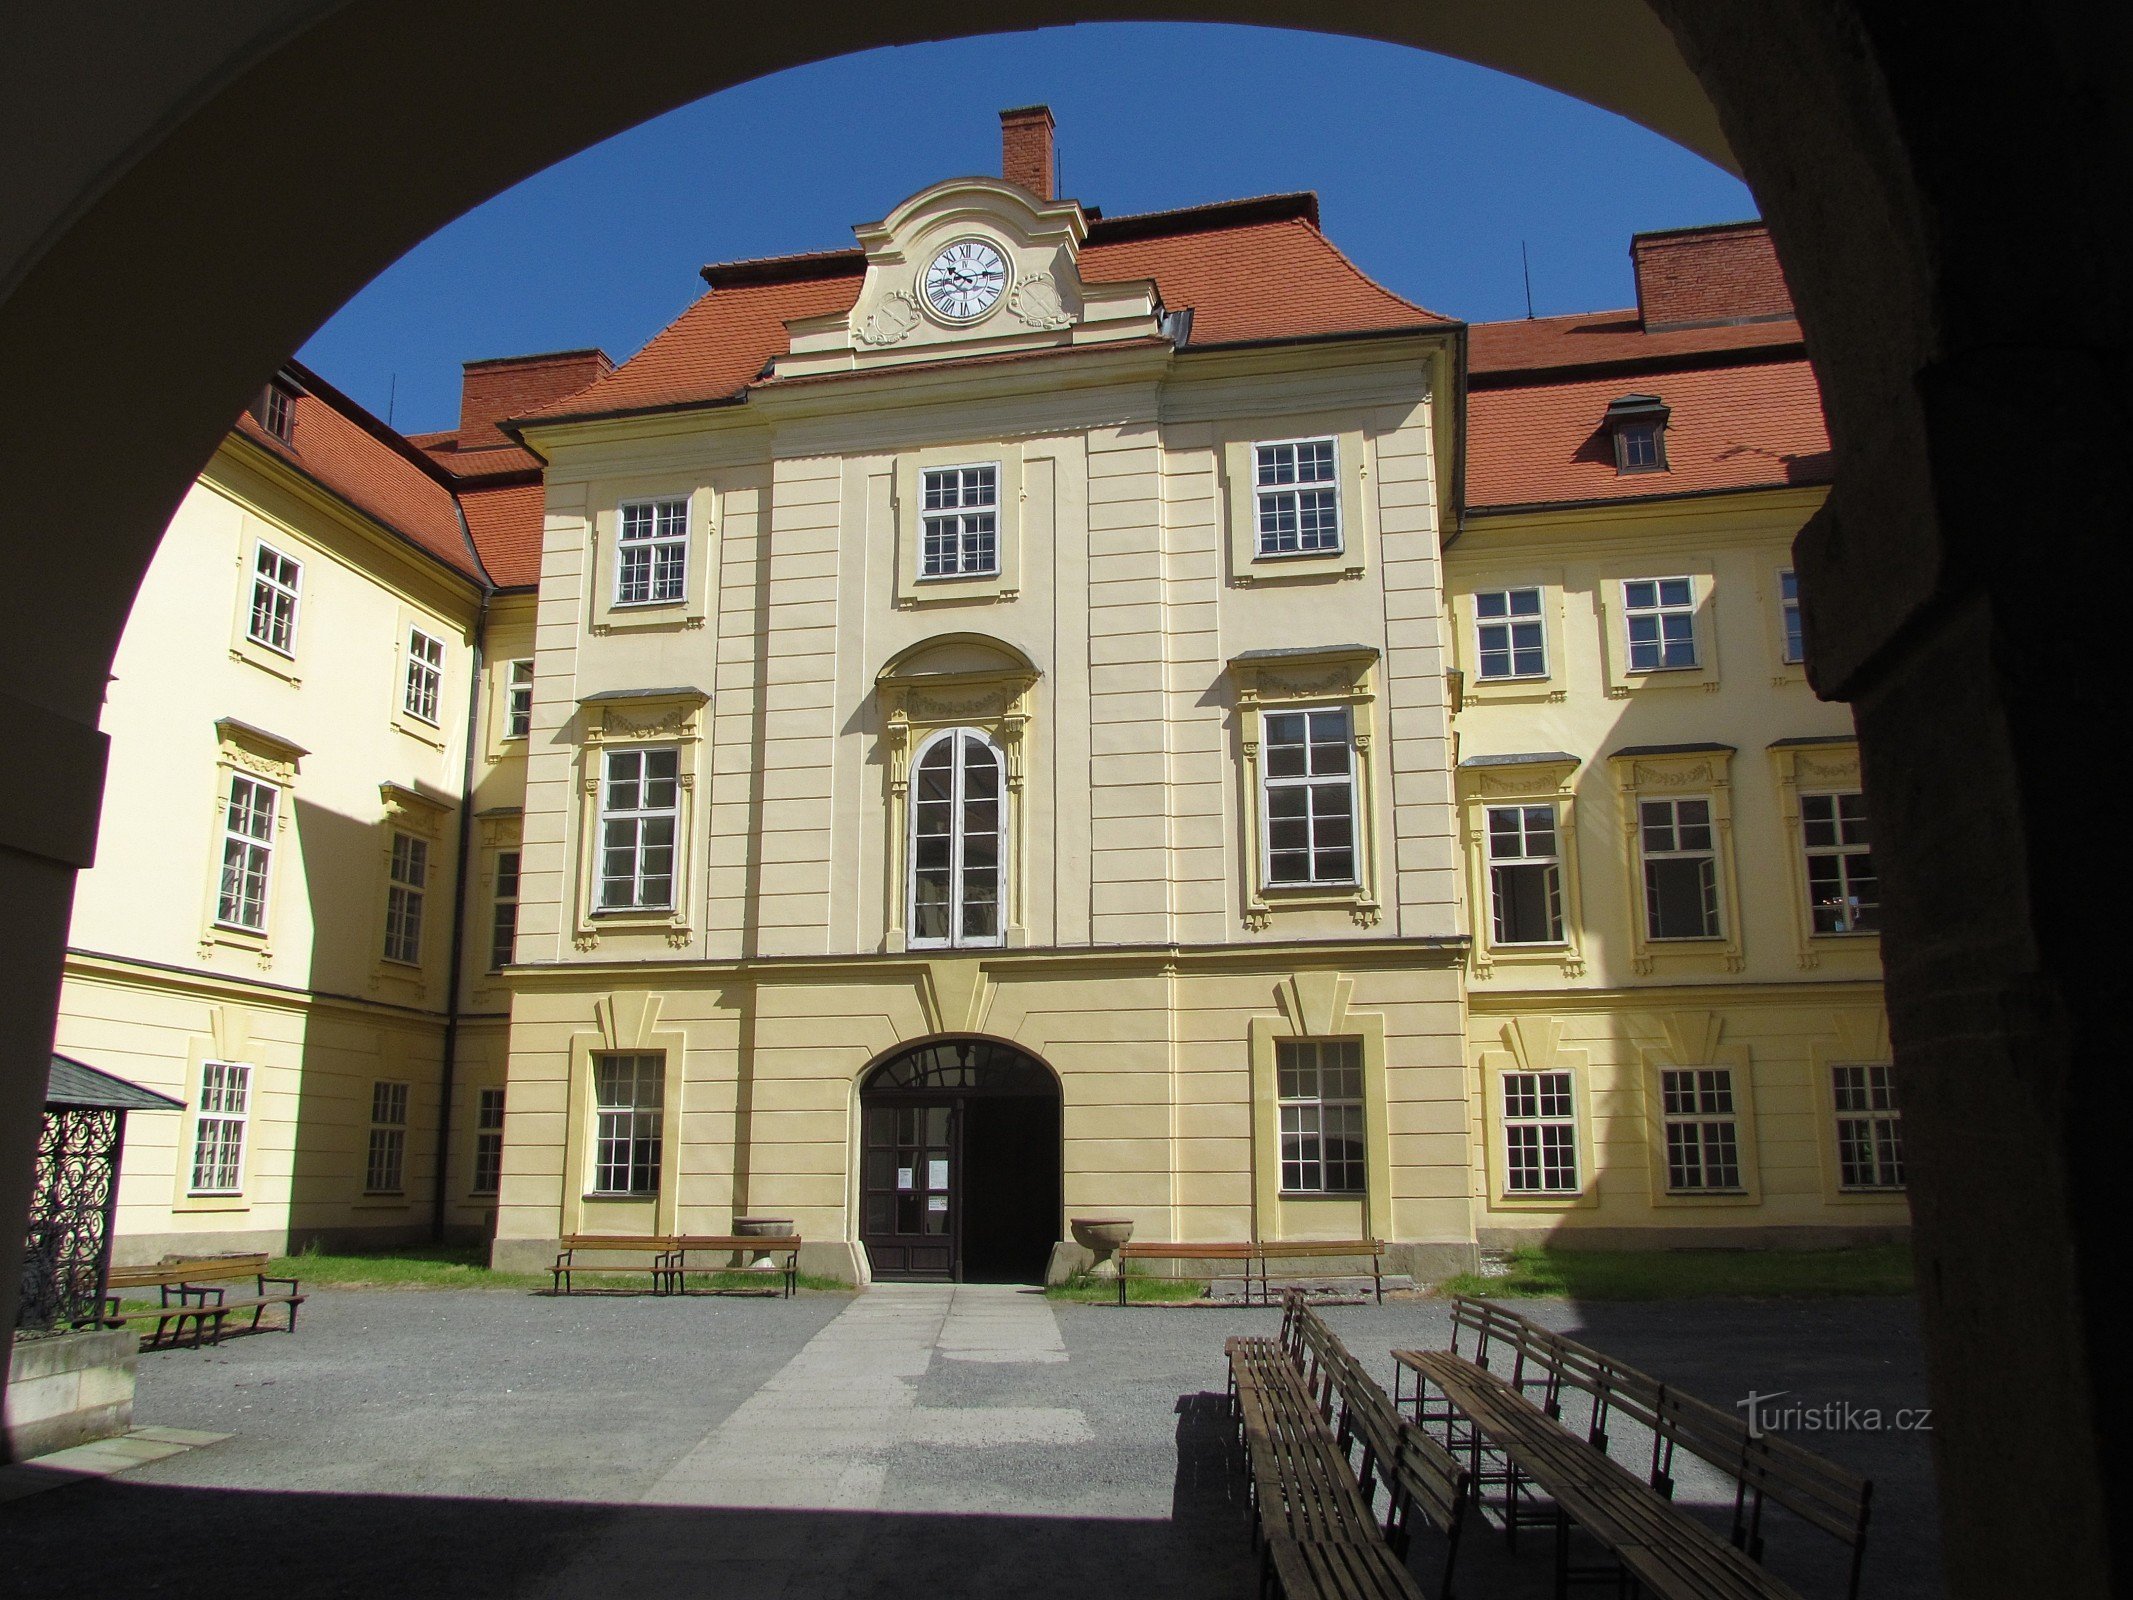 Visita del castillo en Bystřice pod Hostýnem